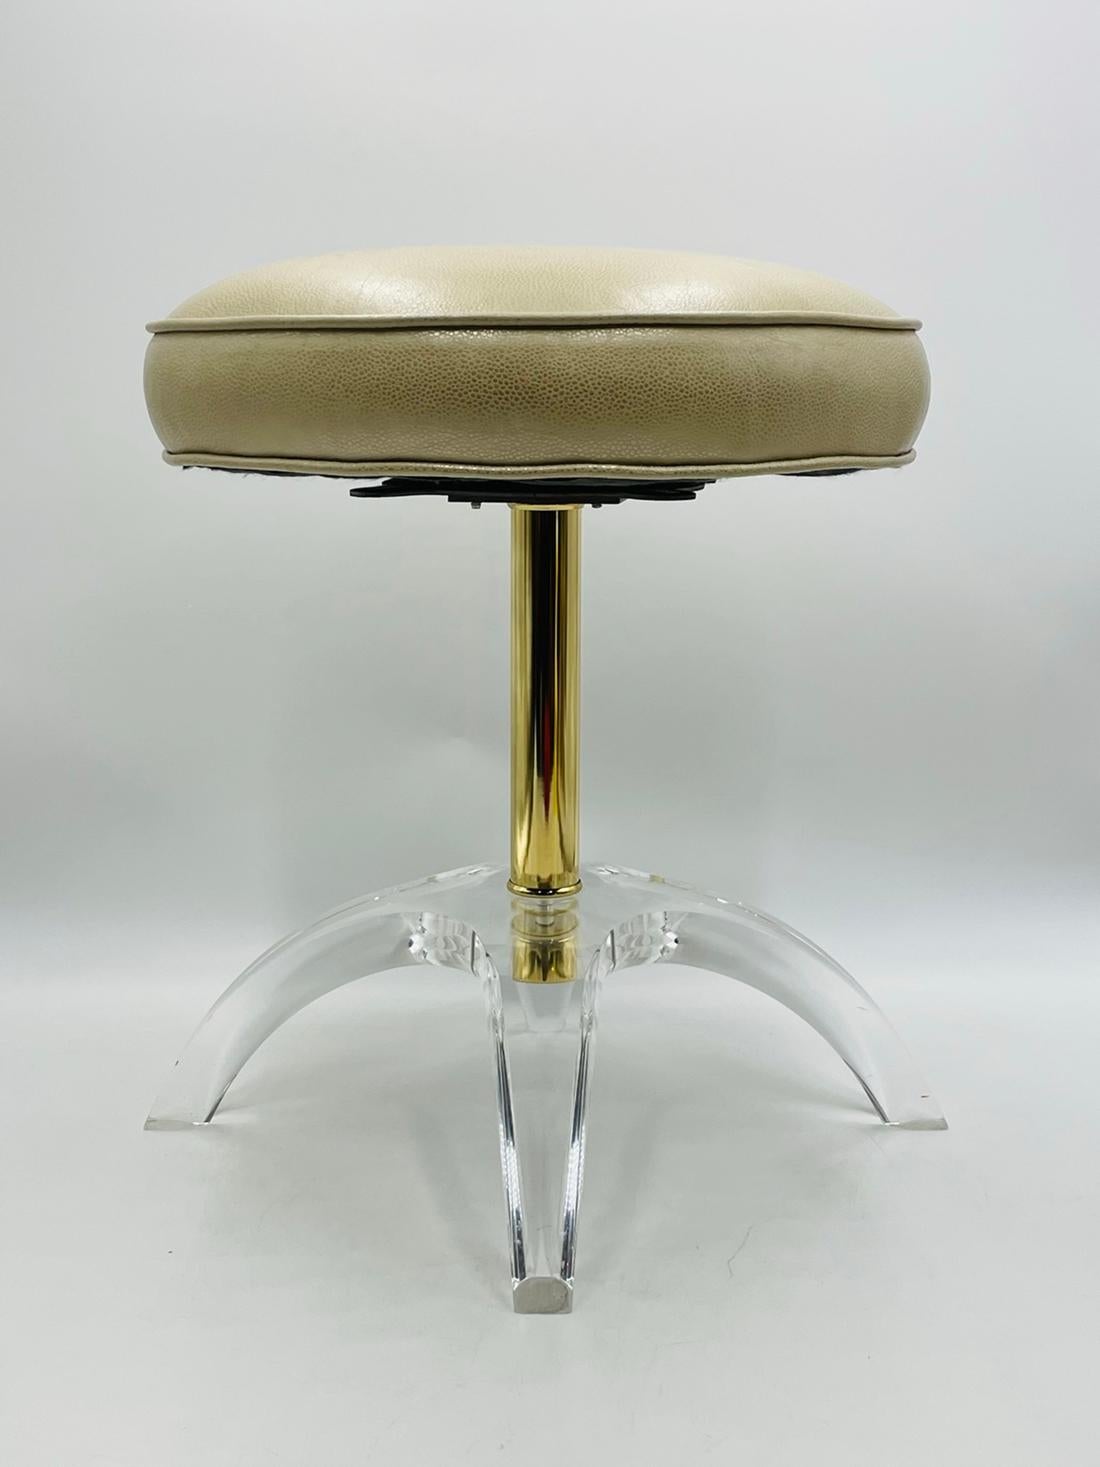 Superbe tabouret de toilette conçu et fabriqué dans les années 1960 par Charles Hollis Jones.

Le tabouret a une base sculpturale en Lucite avec une tige en laiton et un siège pivotant recouvert d'un siège en vinyle de couleur crème.

Le tabouret